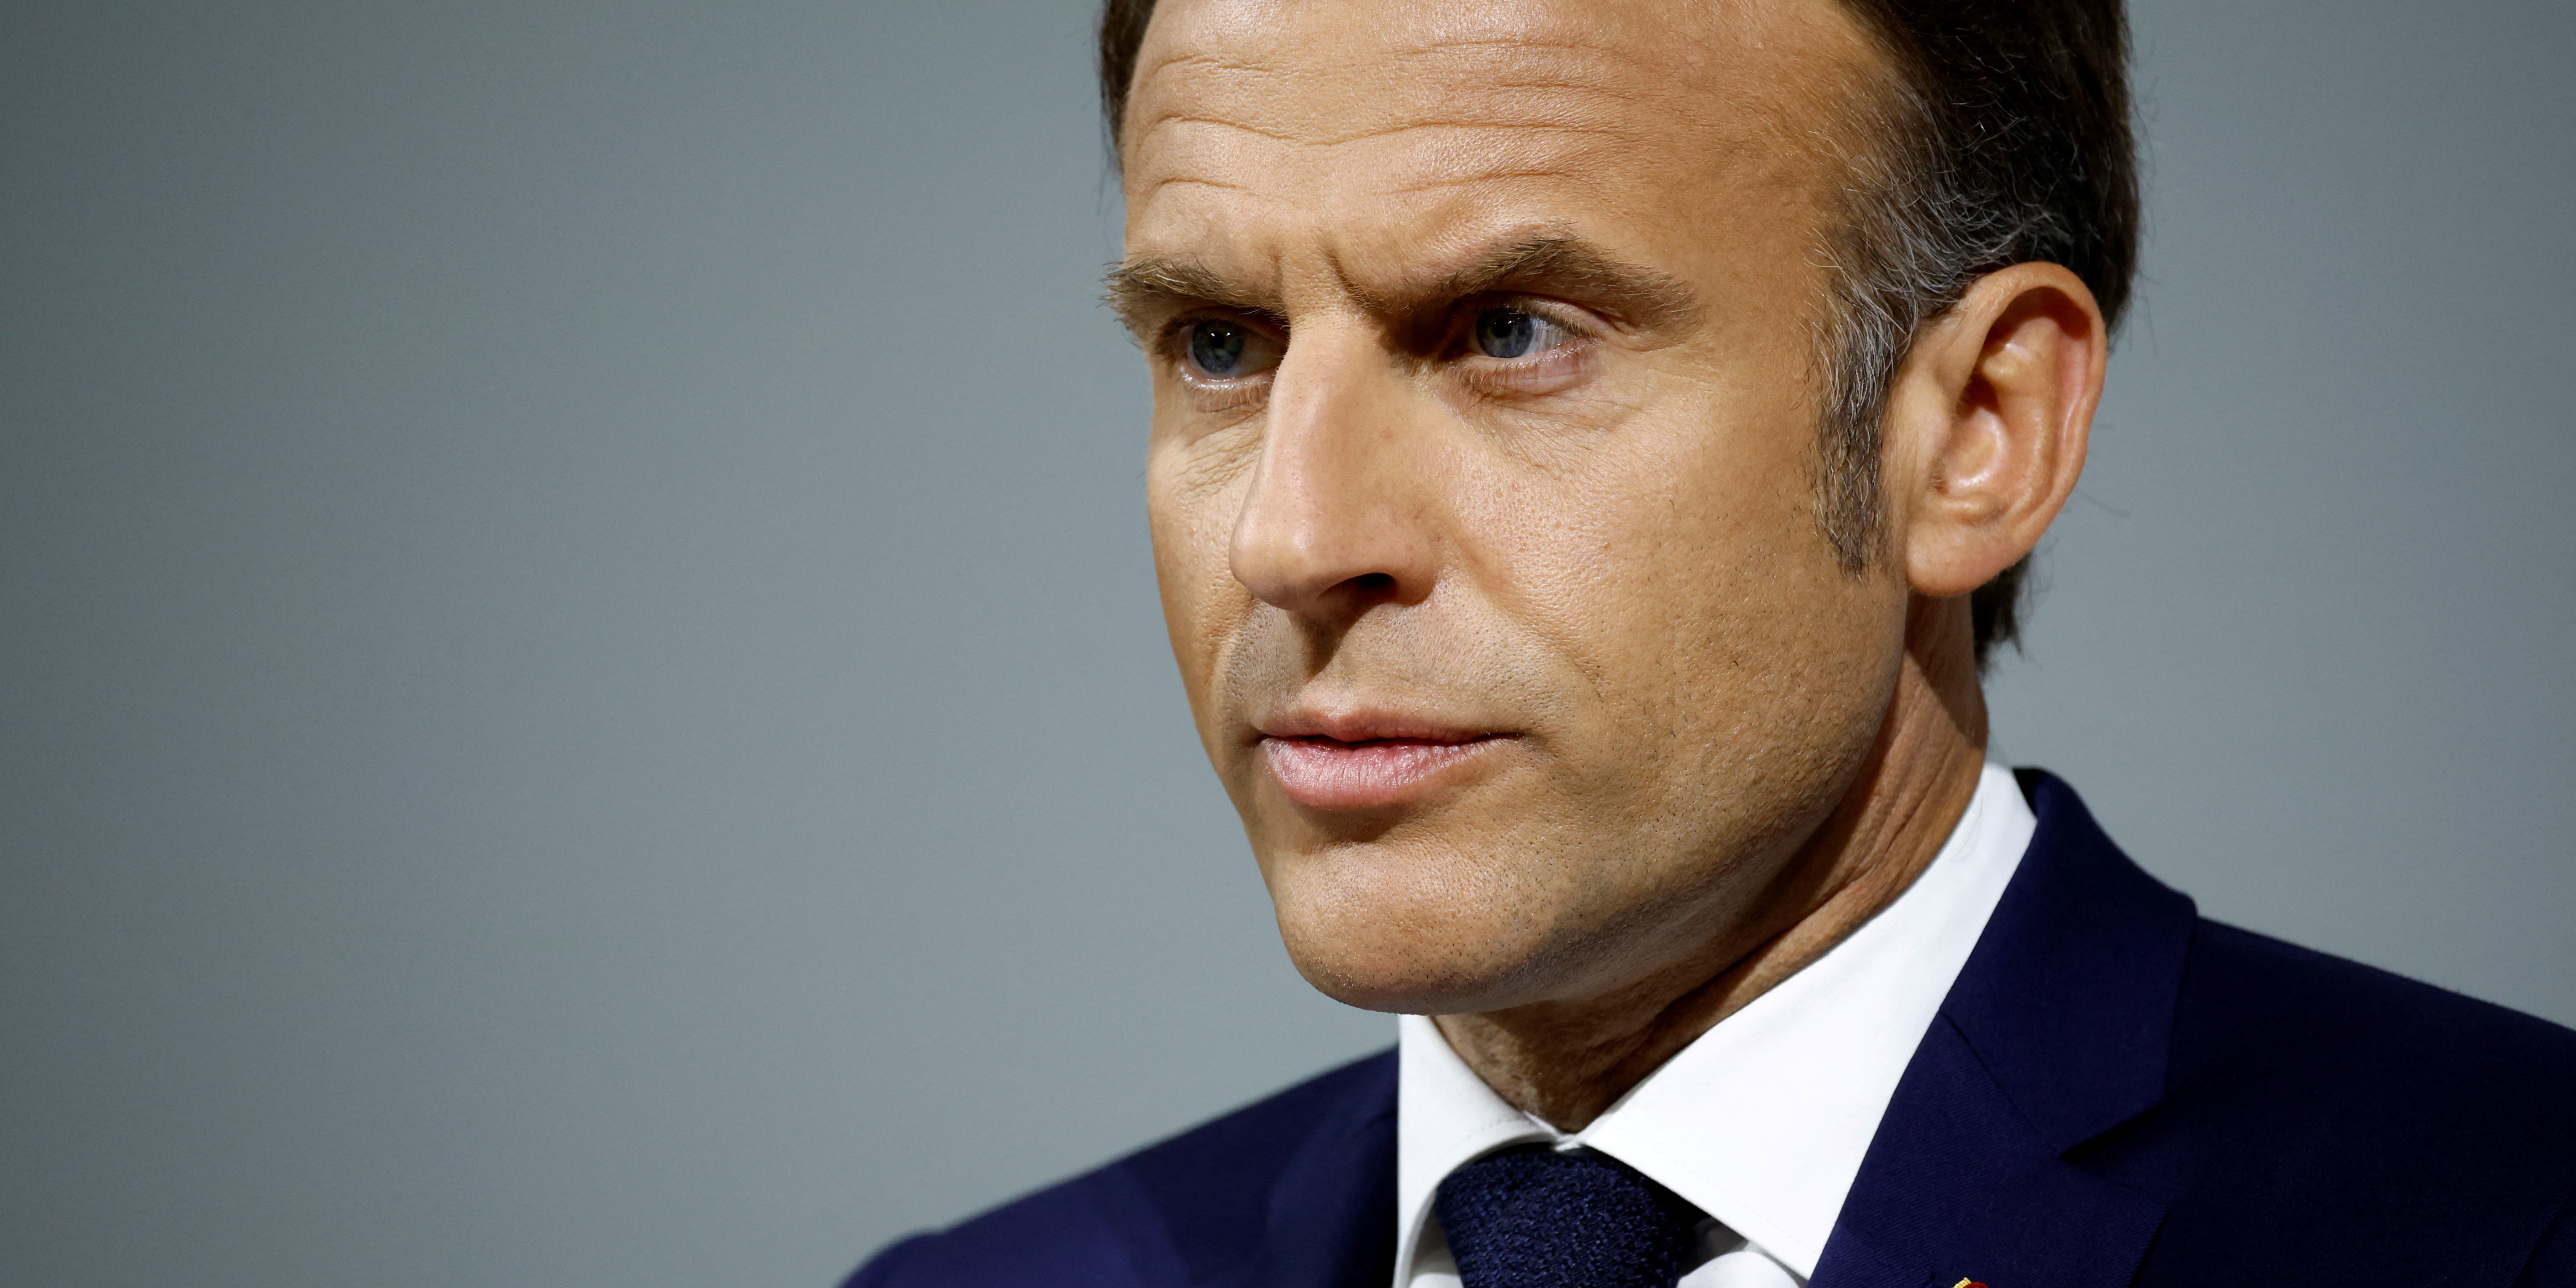 Assurance chômage, retraites : Emmanuel Macron dévoile son cap face au RN et à LFI en vue des prochaines législatives